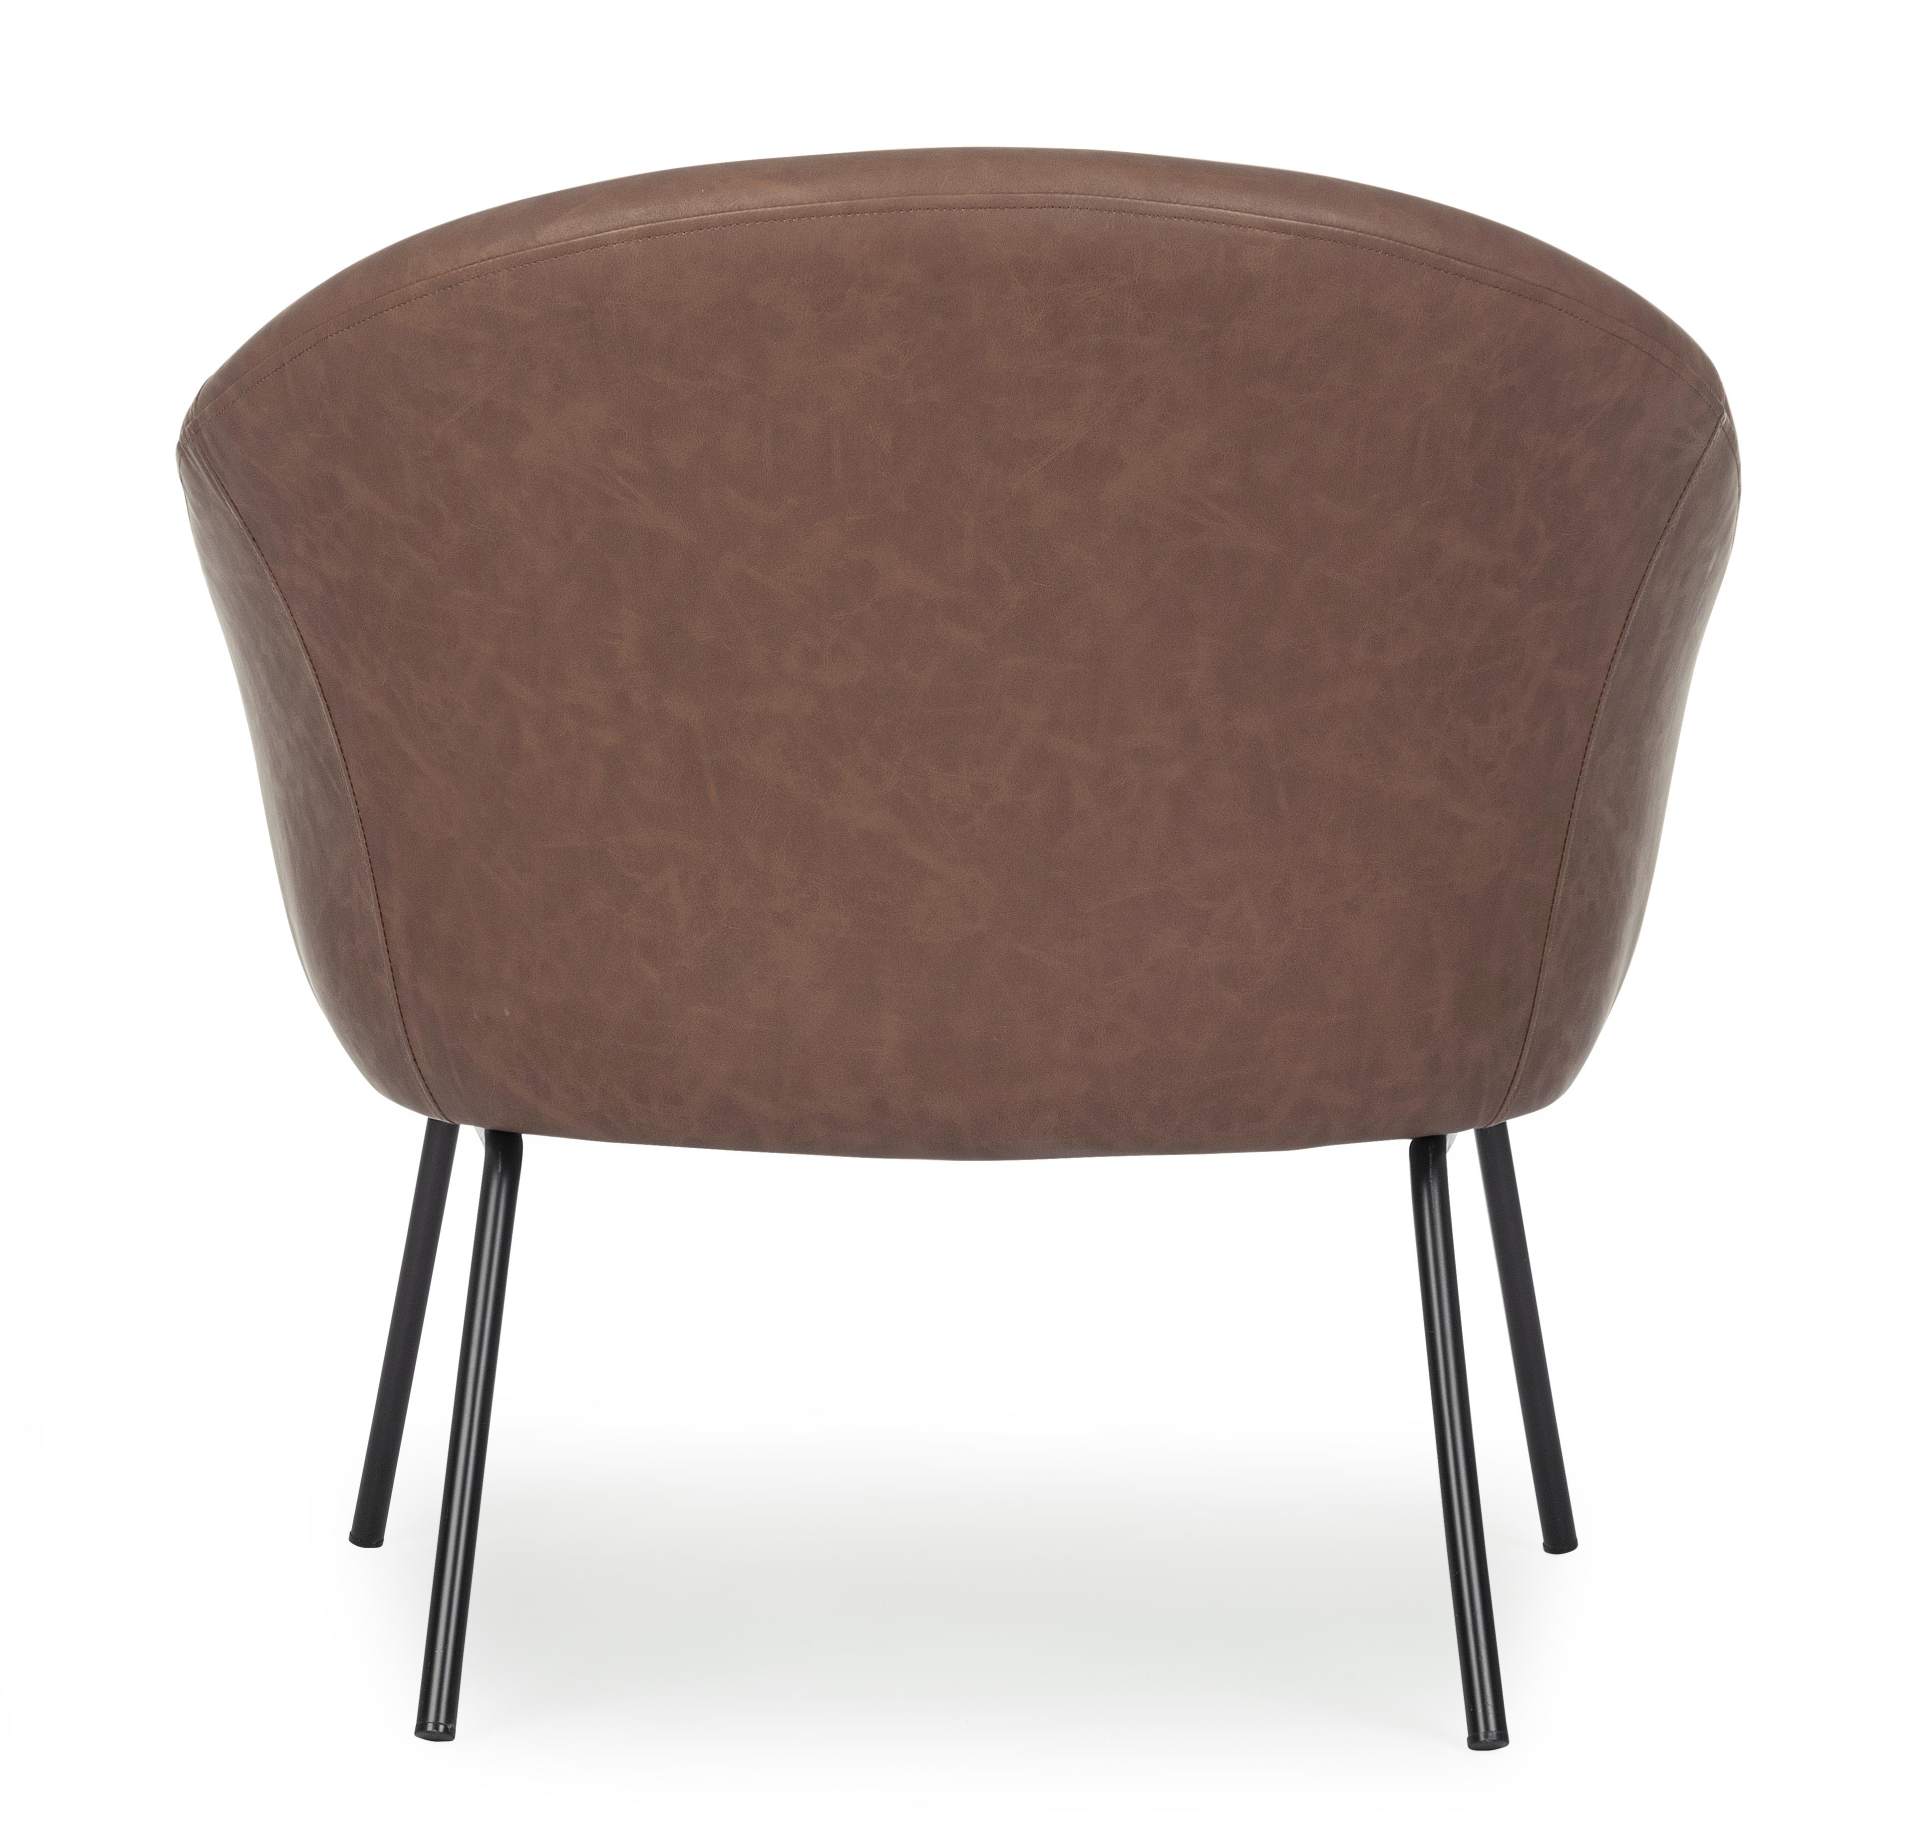 Der Sessel Aiko überzeugt mit seinem modernen Design. Gefertigt wurde er aus Kunstleder, welches einen Cognac Farbton besitzt. Das Gestell ist aus Metall und hat eine schwarze Farbe. Der Sessel besitzt eine Sitzhöhe von 45 cm. Die Breite beträgt 80 cm.